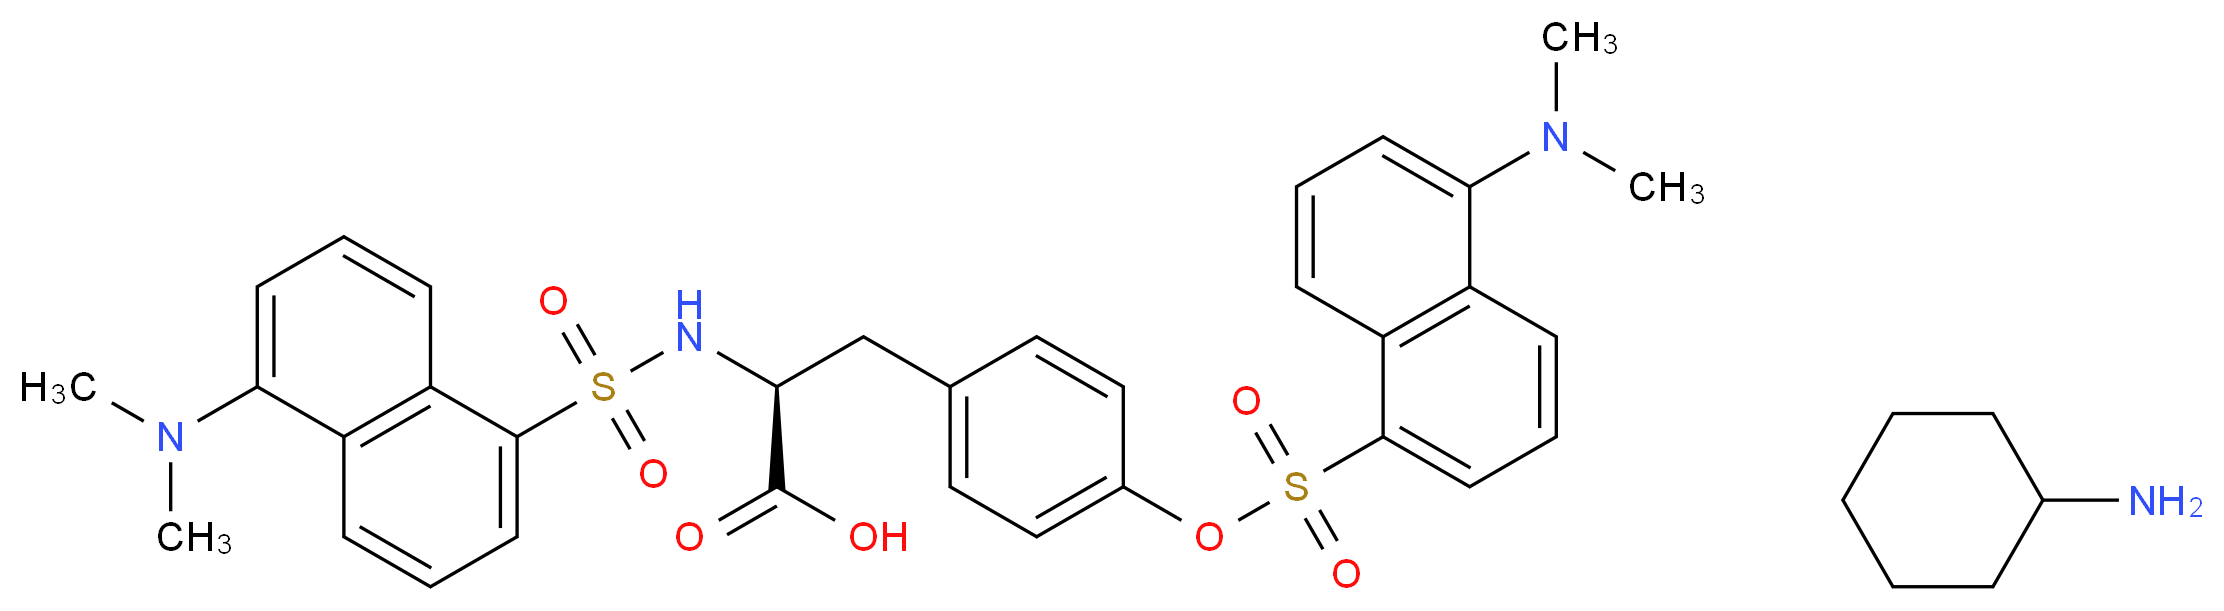 N,O-Didansyl-L-tyrosine cyclohexylammonium salt_Molecular_structure_CAS_102783-47-1)